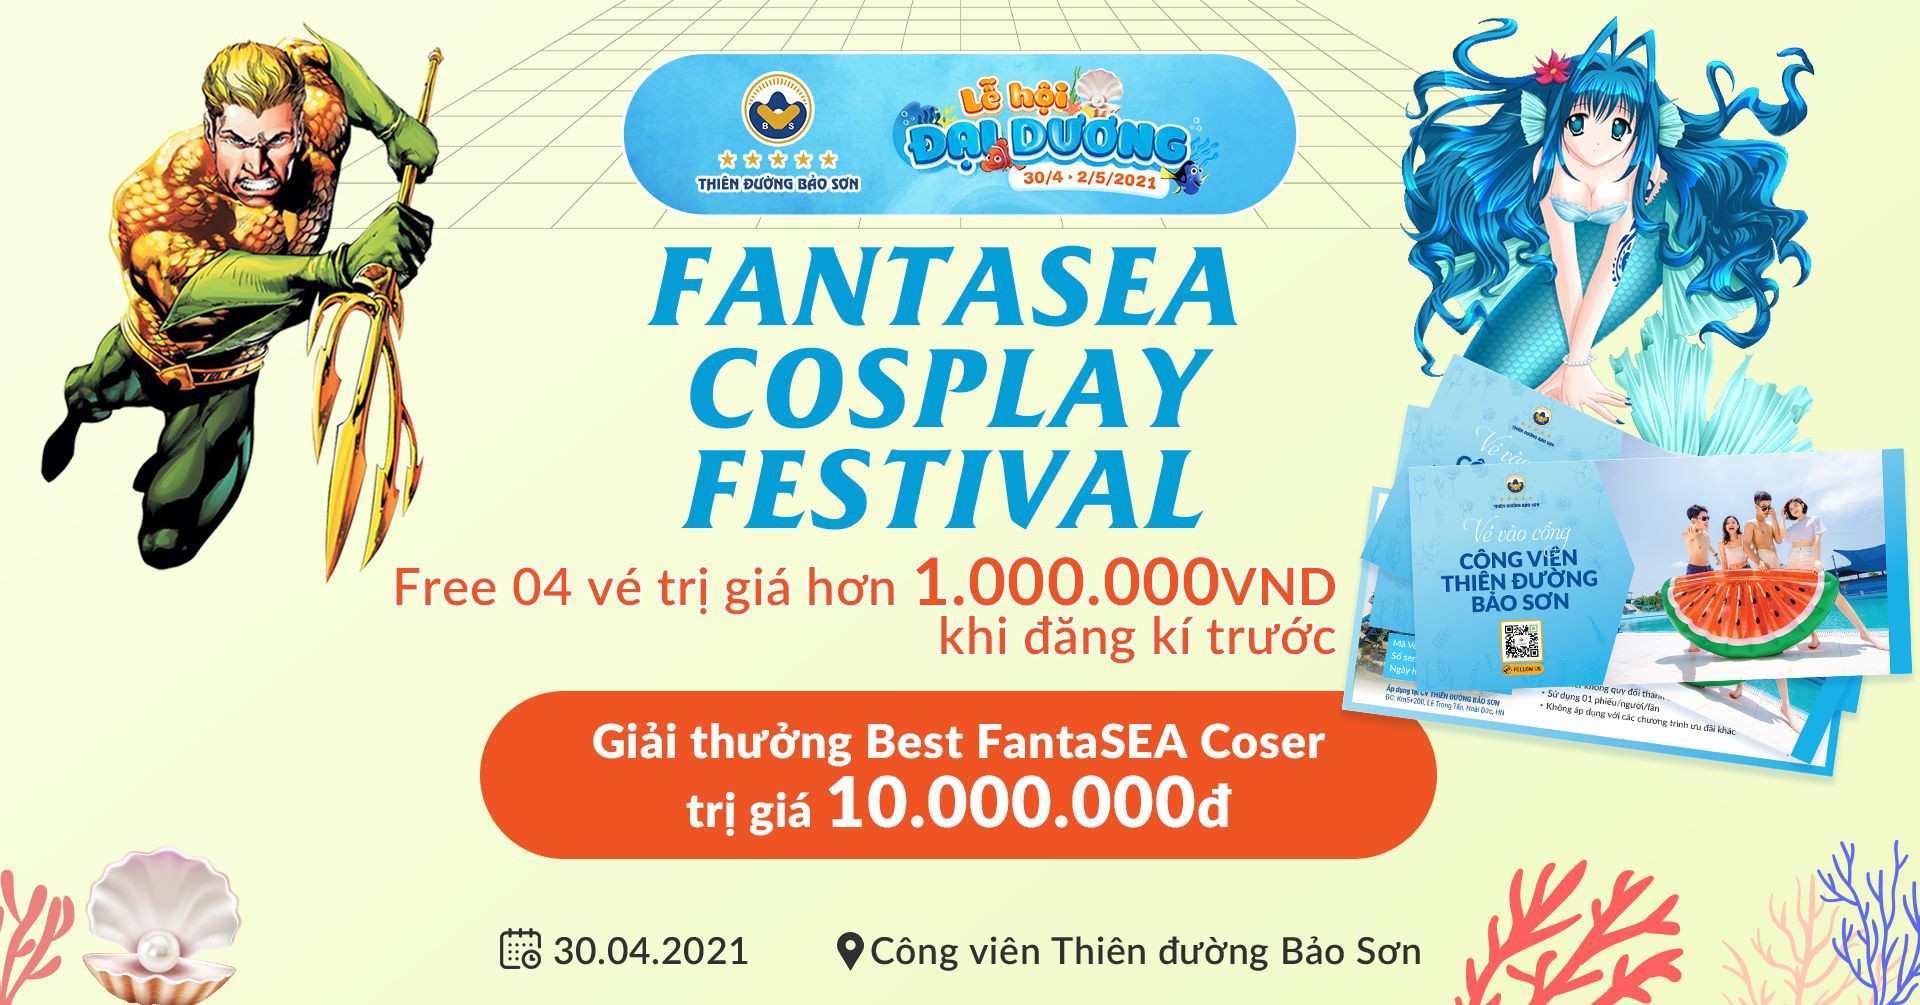 Lễ hội Cosplay chủ đề Đại Dương - FantaSEA Cosplay Festival 2021